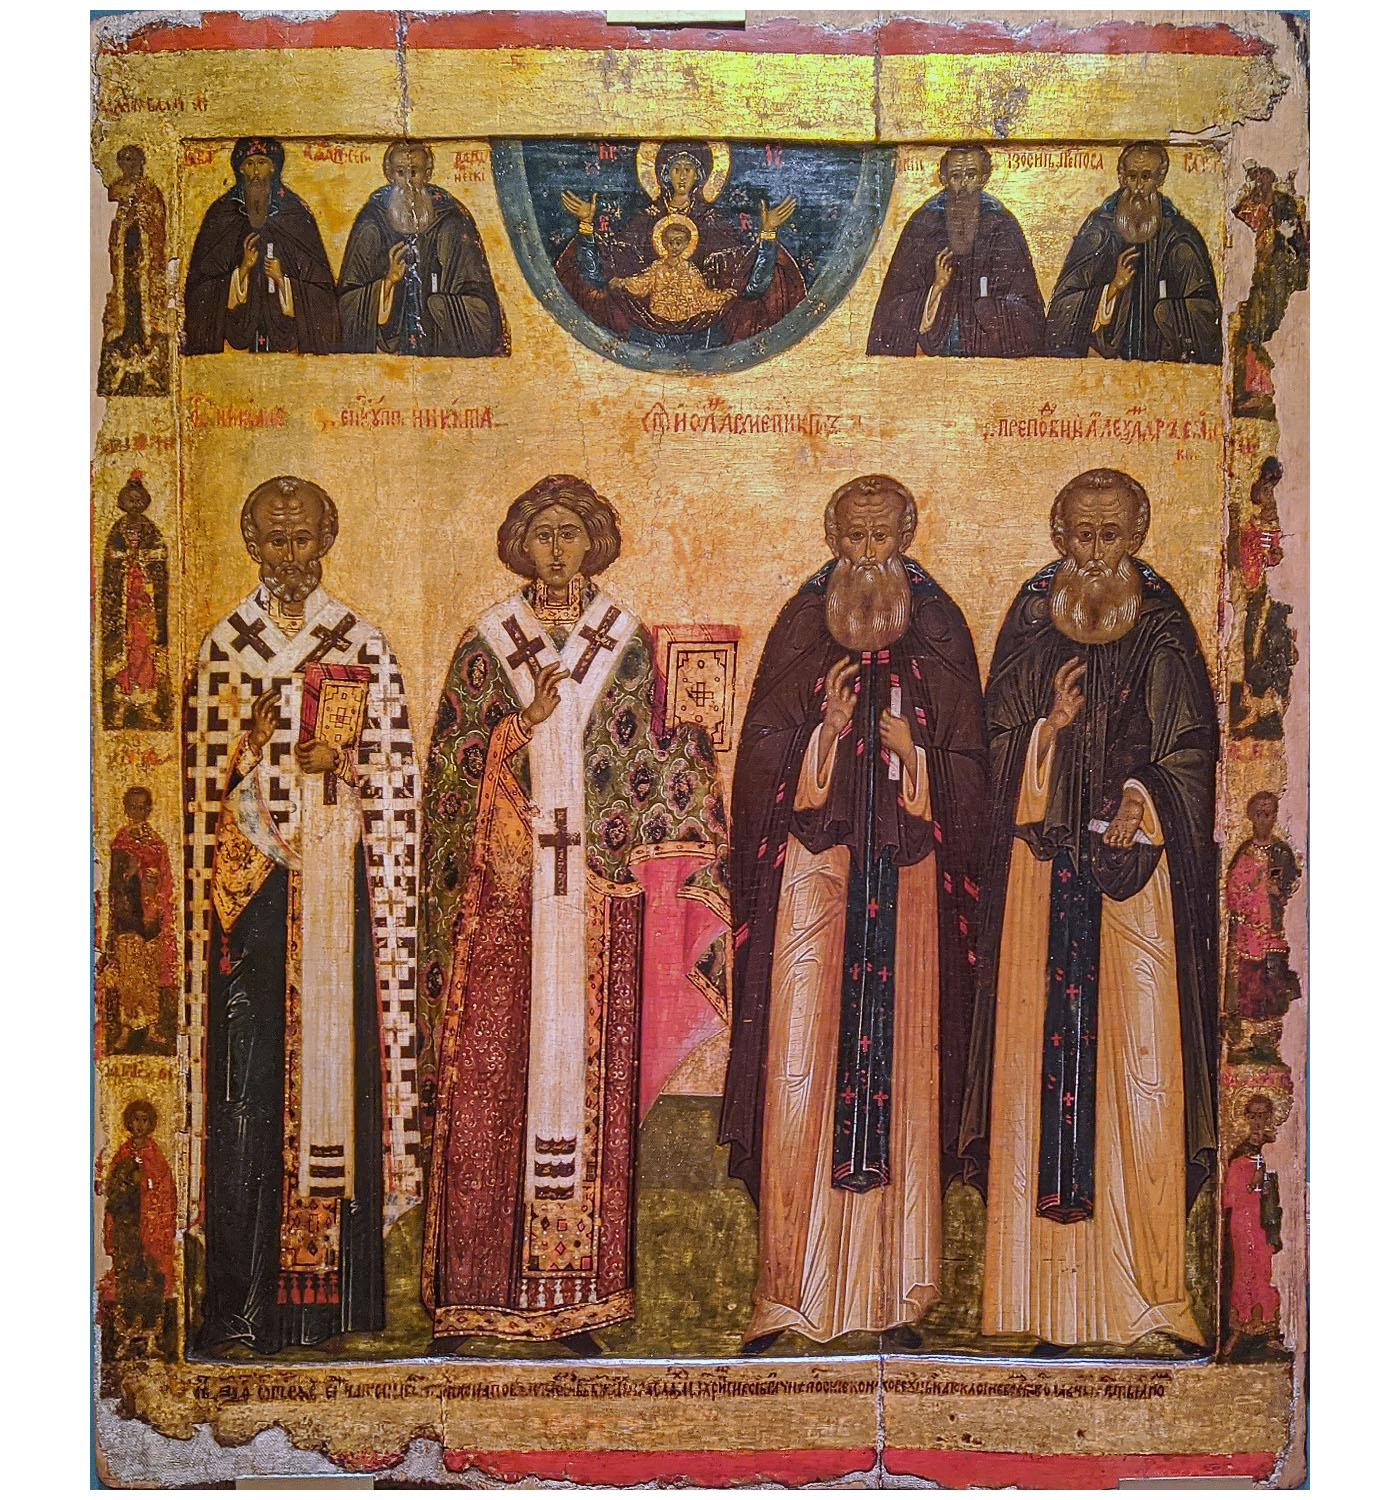 Свт. Николай, свт. Никита, прпп. Иоанн и Александр. 1560. Новнгород